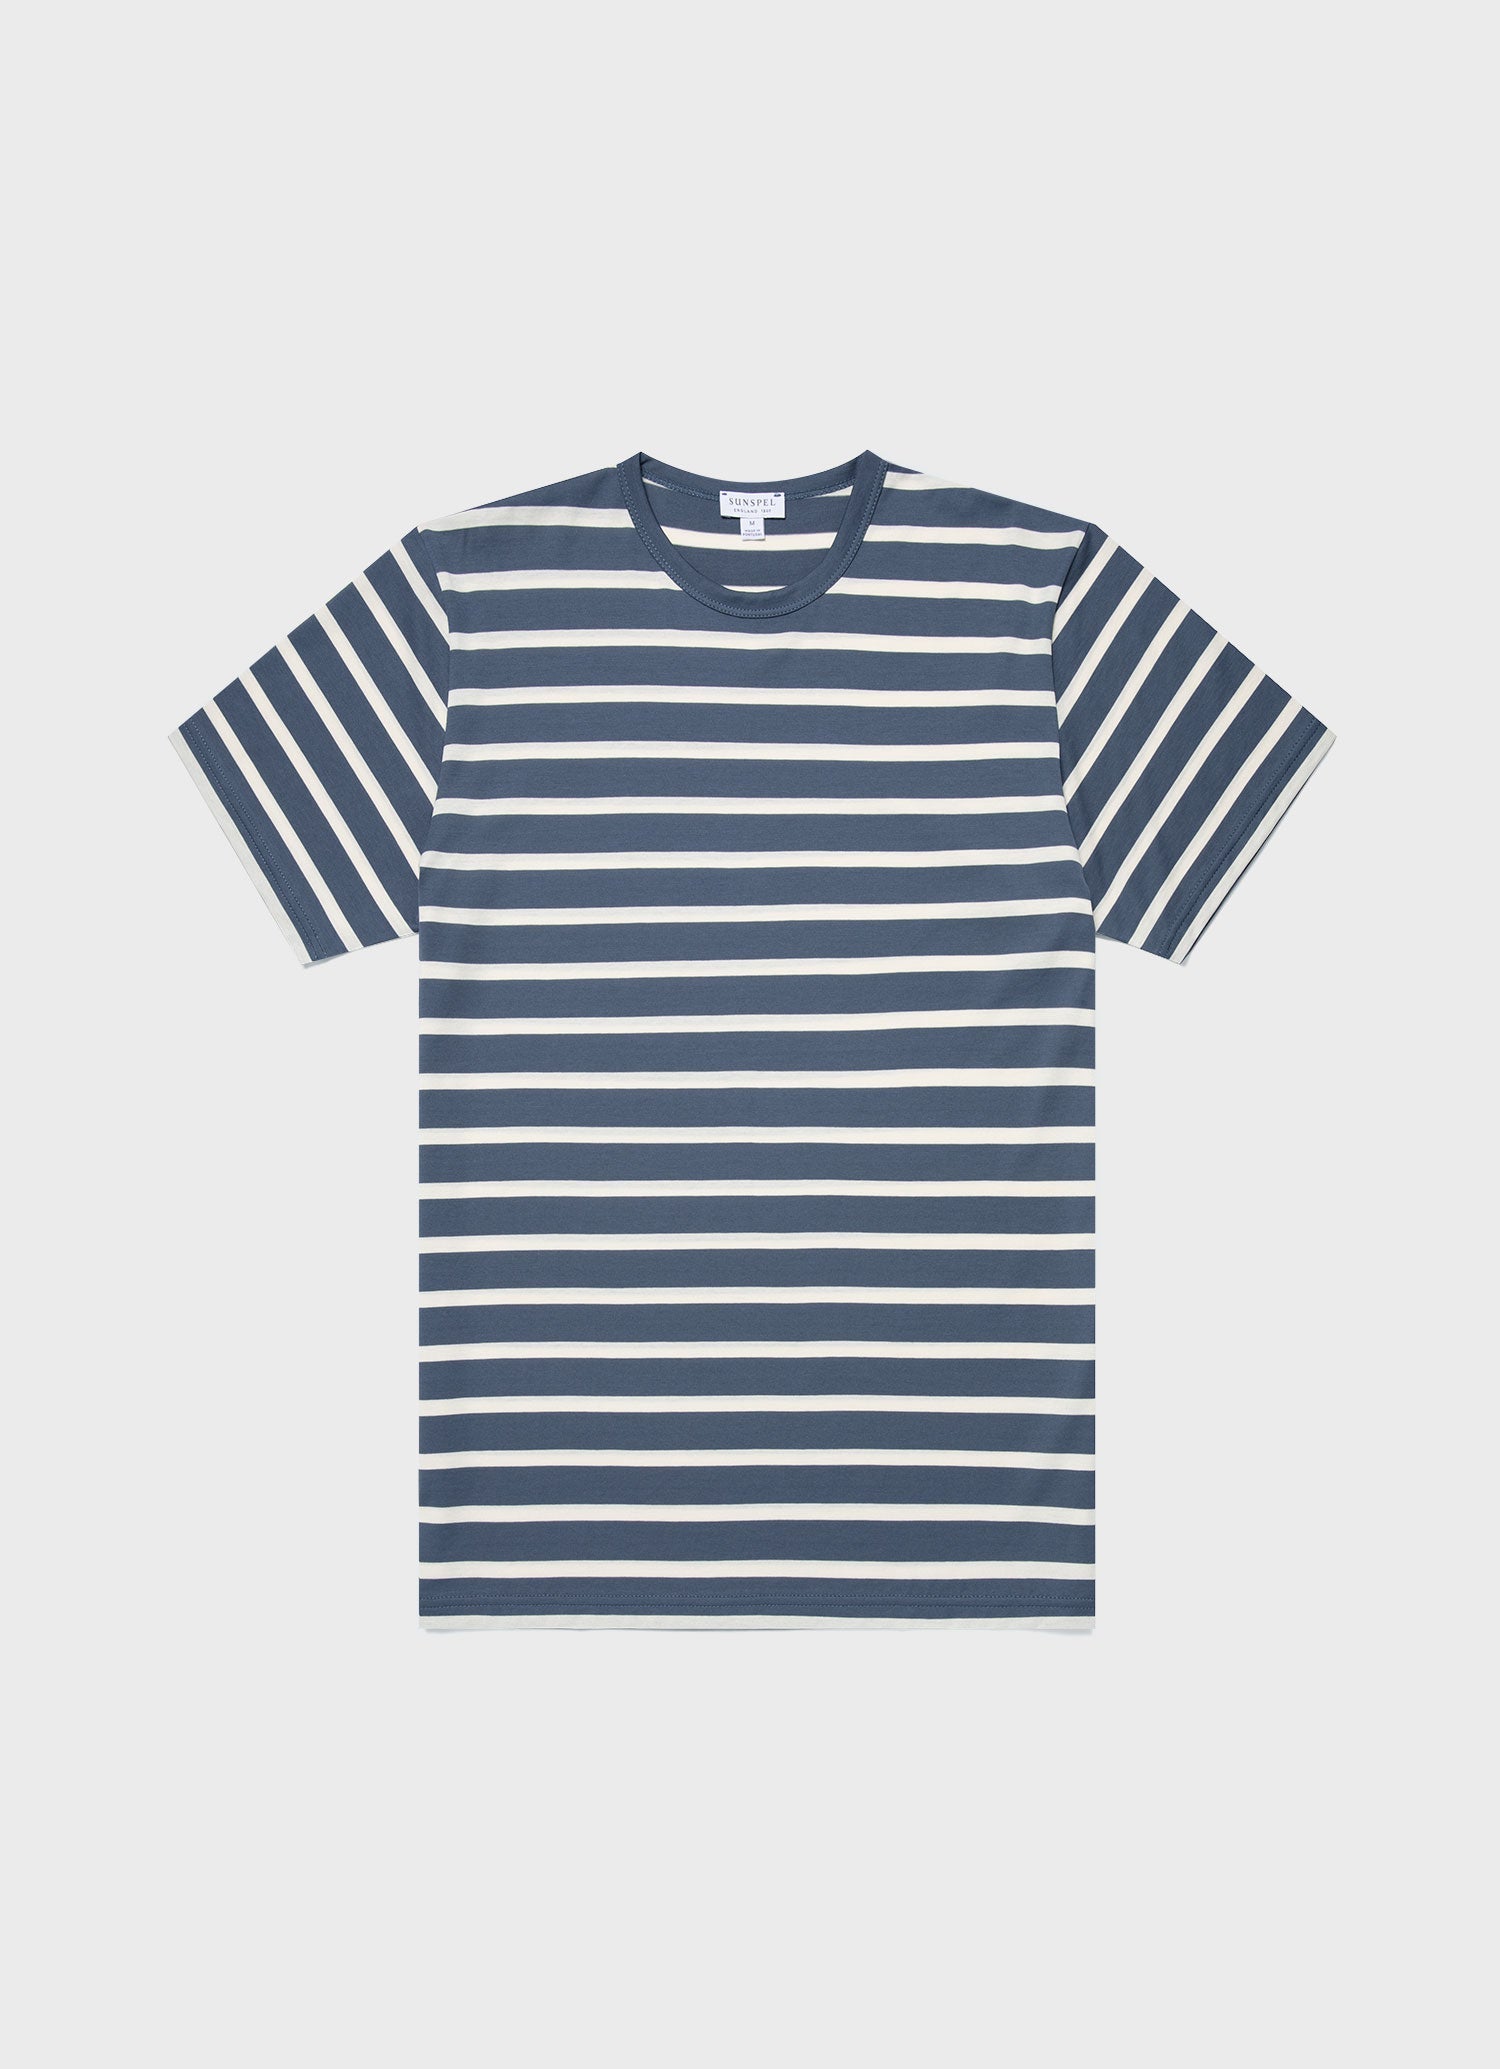 Men's Classic T-shirt in Slate Blue/Ecru Breton Stripe